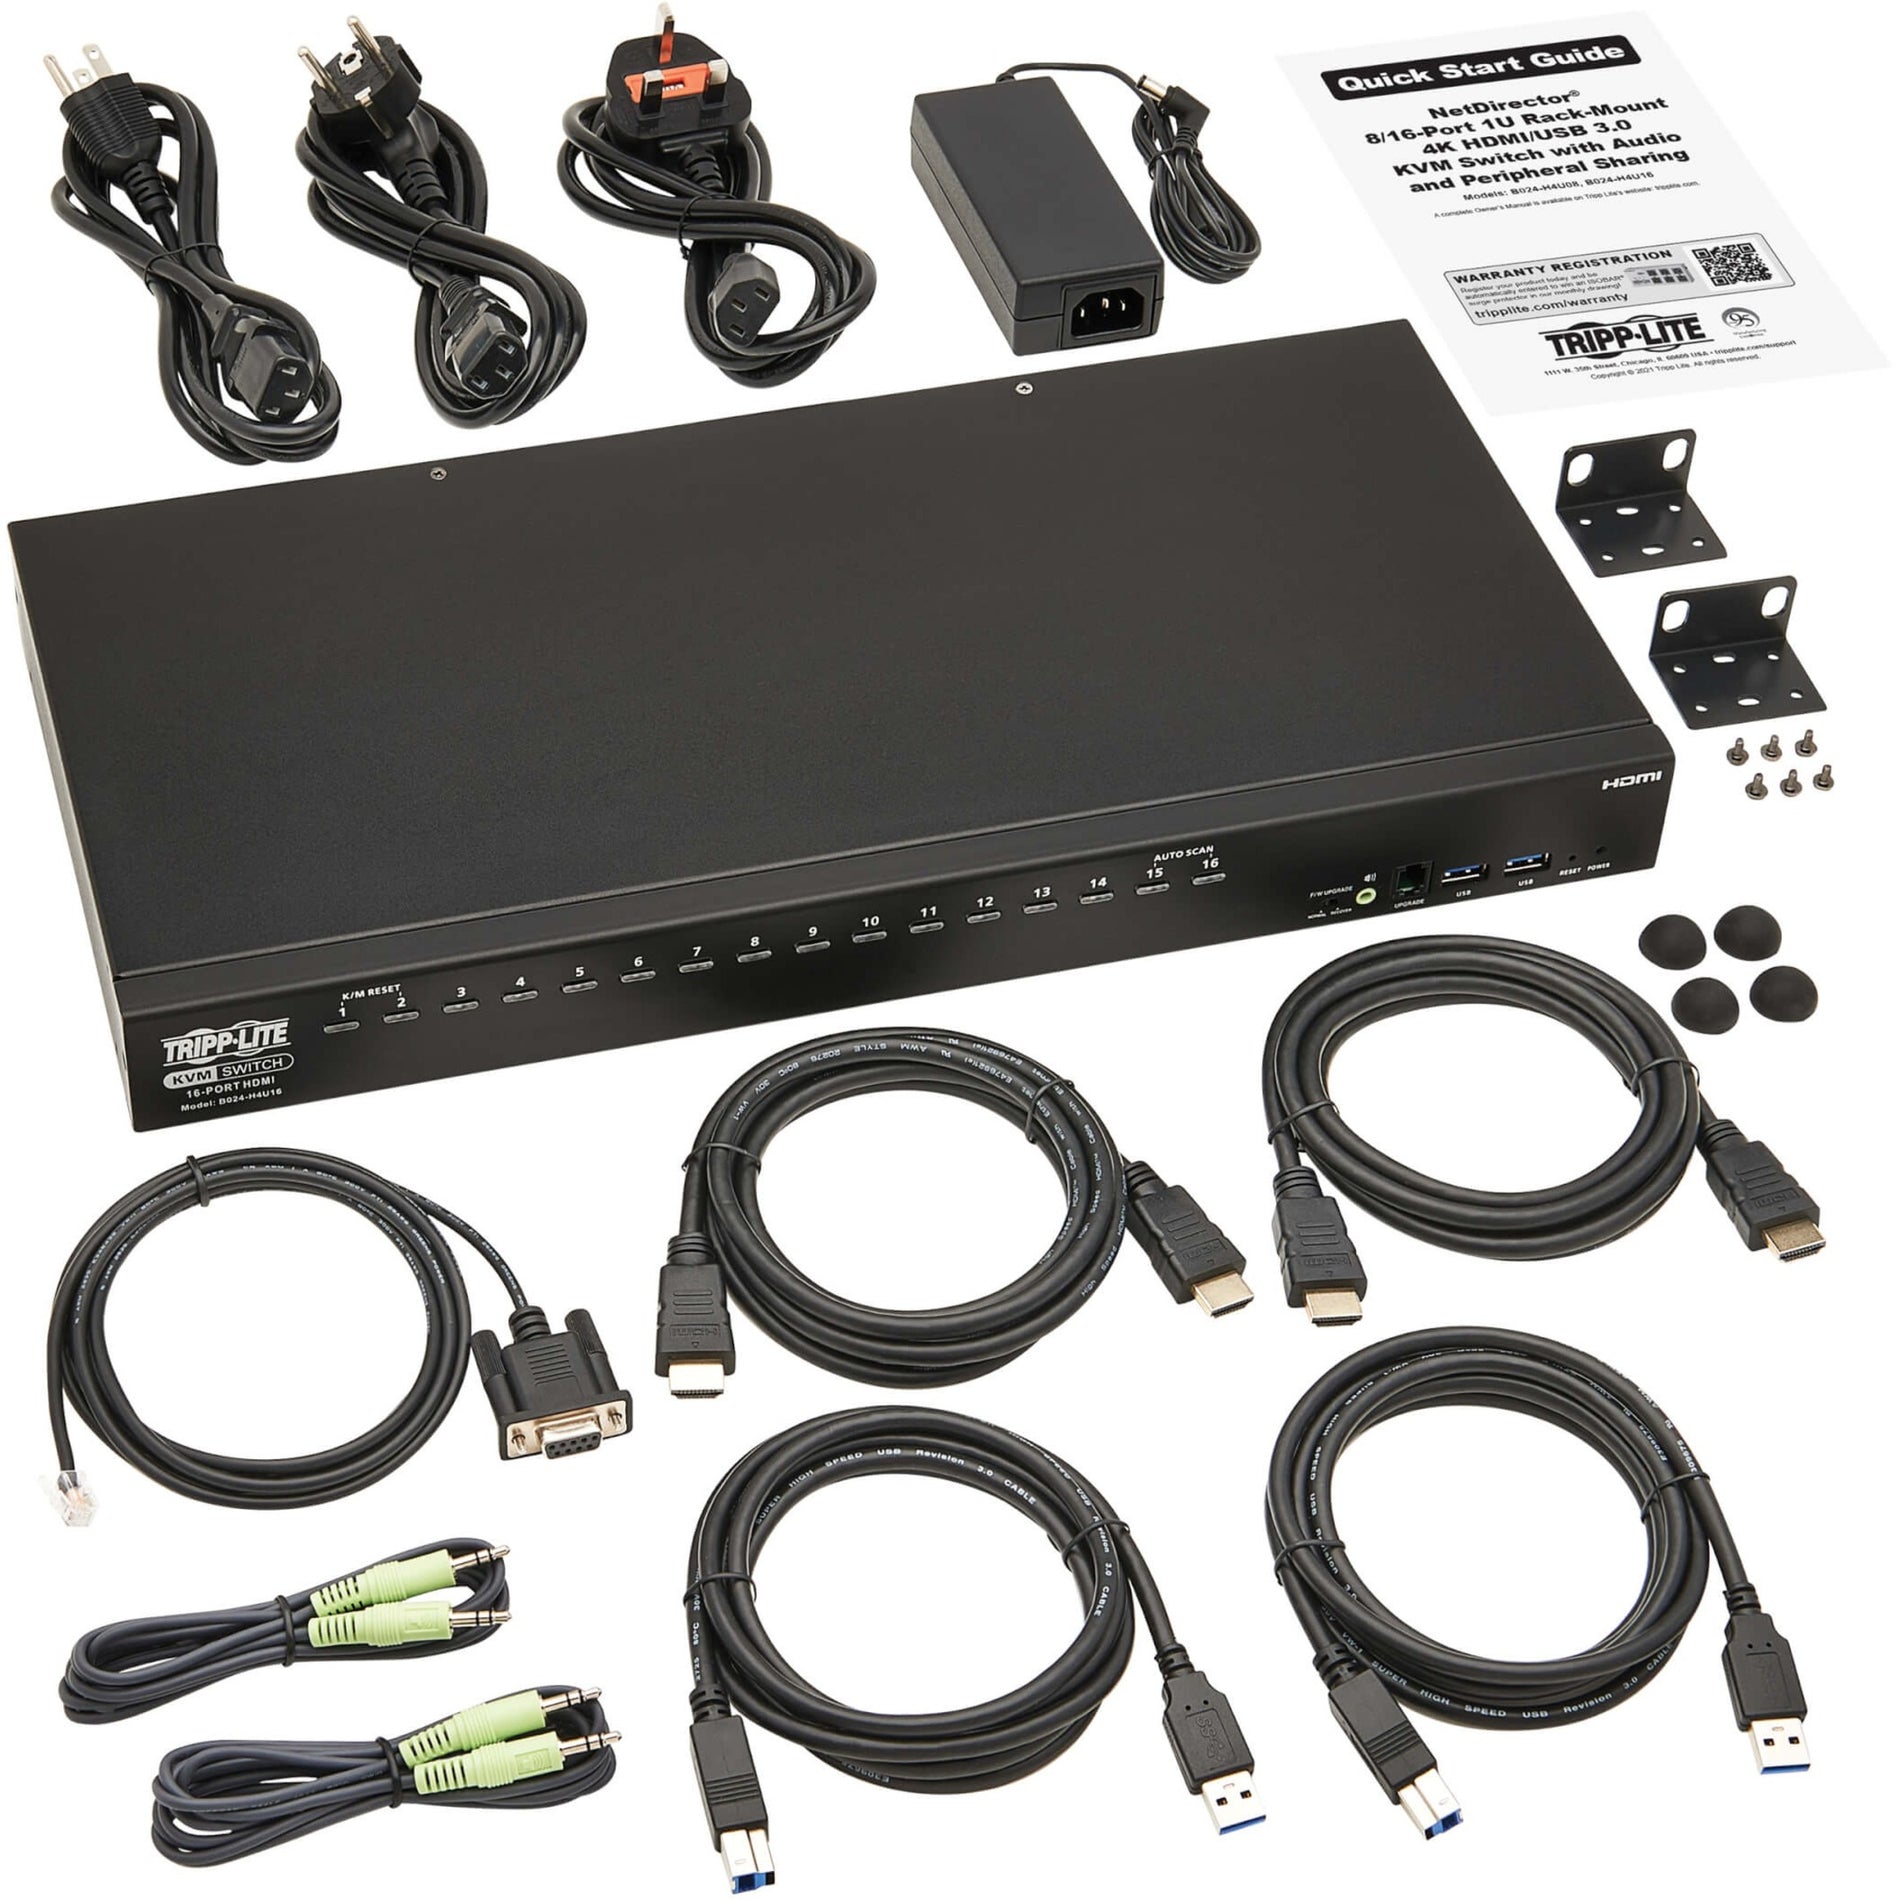 Tripp Lite B024-H4U16 16-Puerto HDMI/USB Conmutador KVM 1U Resolución 4K Compatible con TAA Marca: Tripp Lite